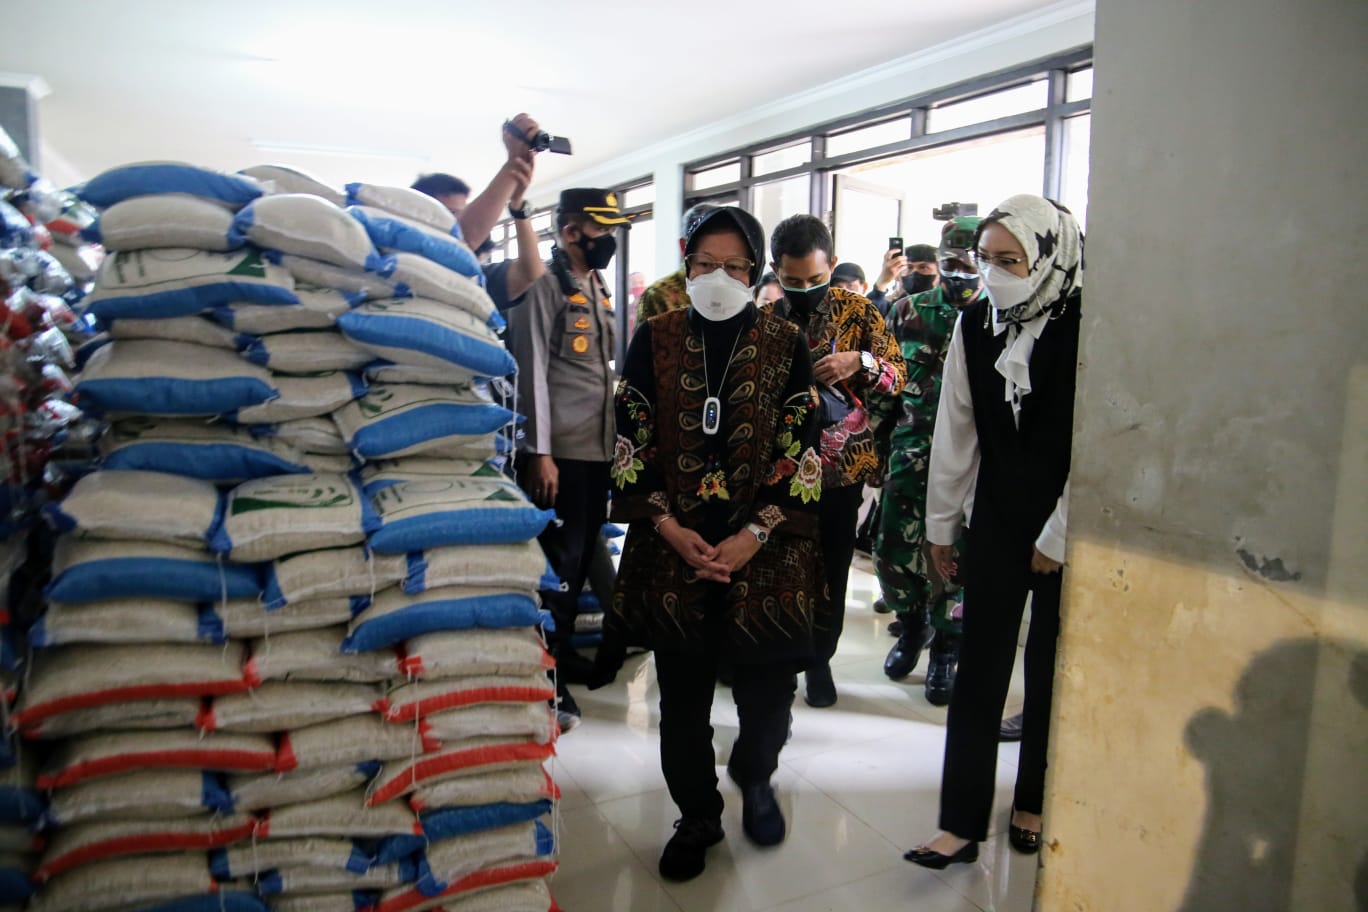 Menteri Sosial Tri Rismaharini melakukan sidak di salah satu gudang untuk memastikan kualitas beras layak untuk di konsumsi. foto Humas Kemensos